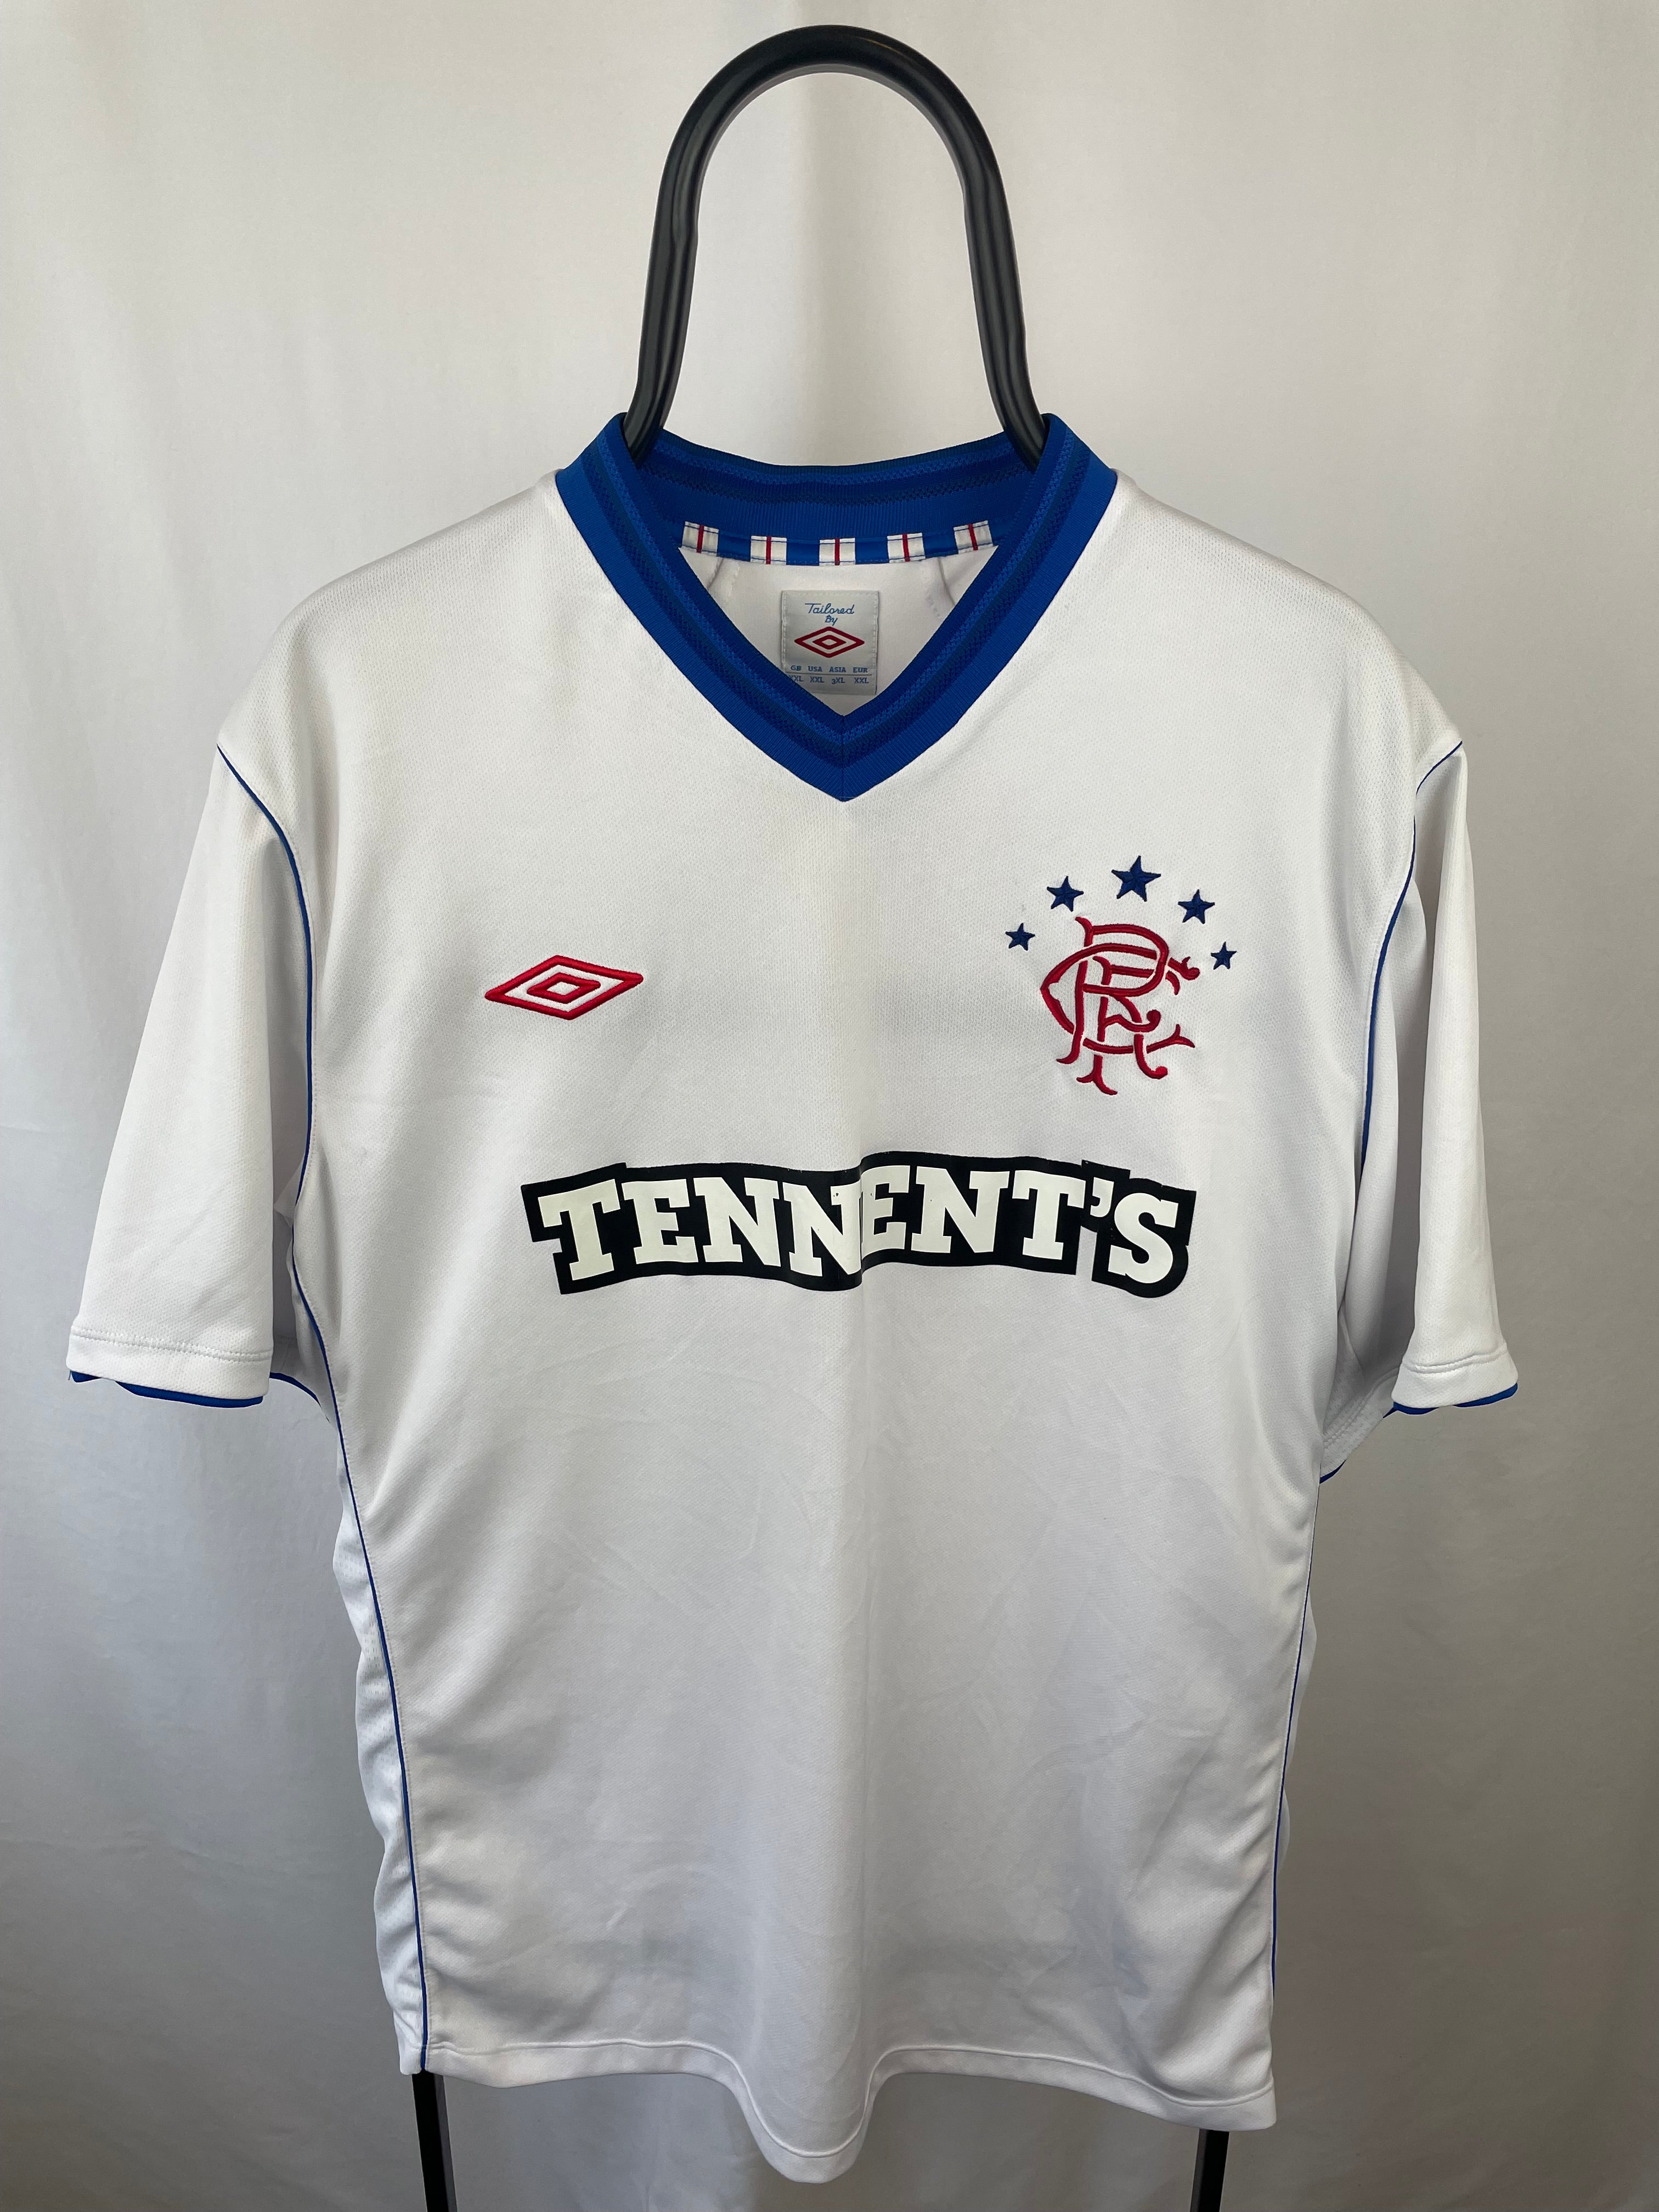 Rangers 2012-13 Original Away Shirt (Excellent) L Football shirt